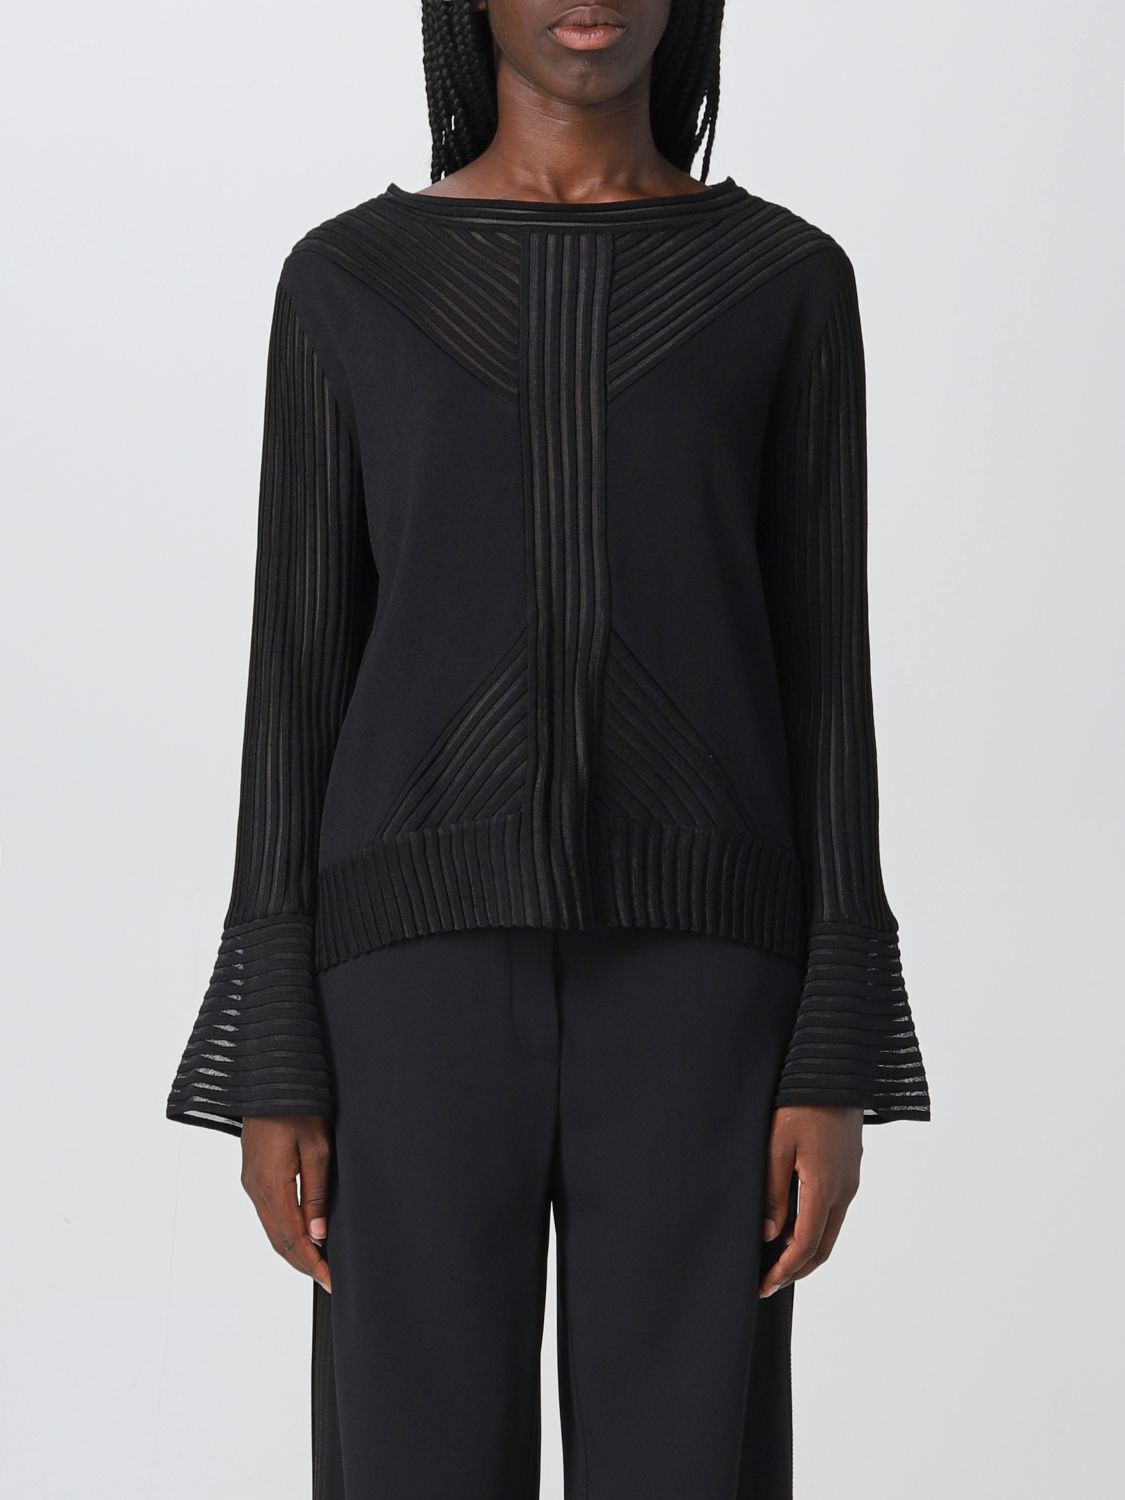 ALBERTA FERRETTI: sweater for woman - Black | Alberta Ferretti sweater ...